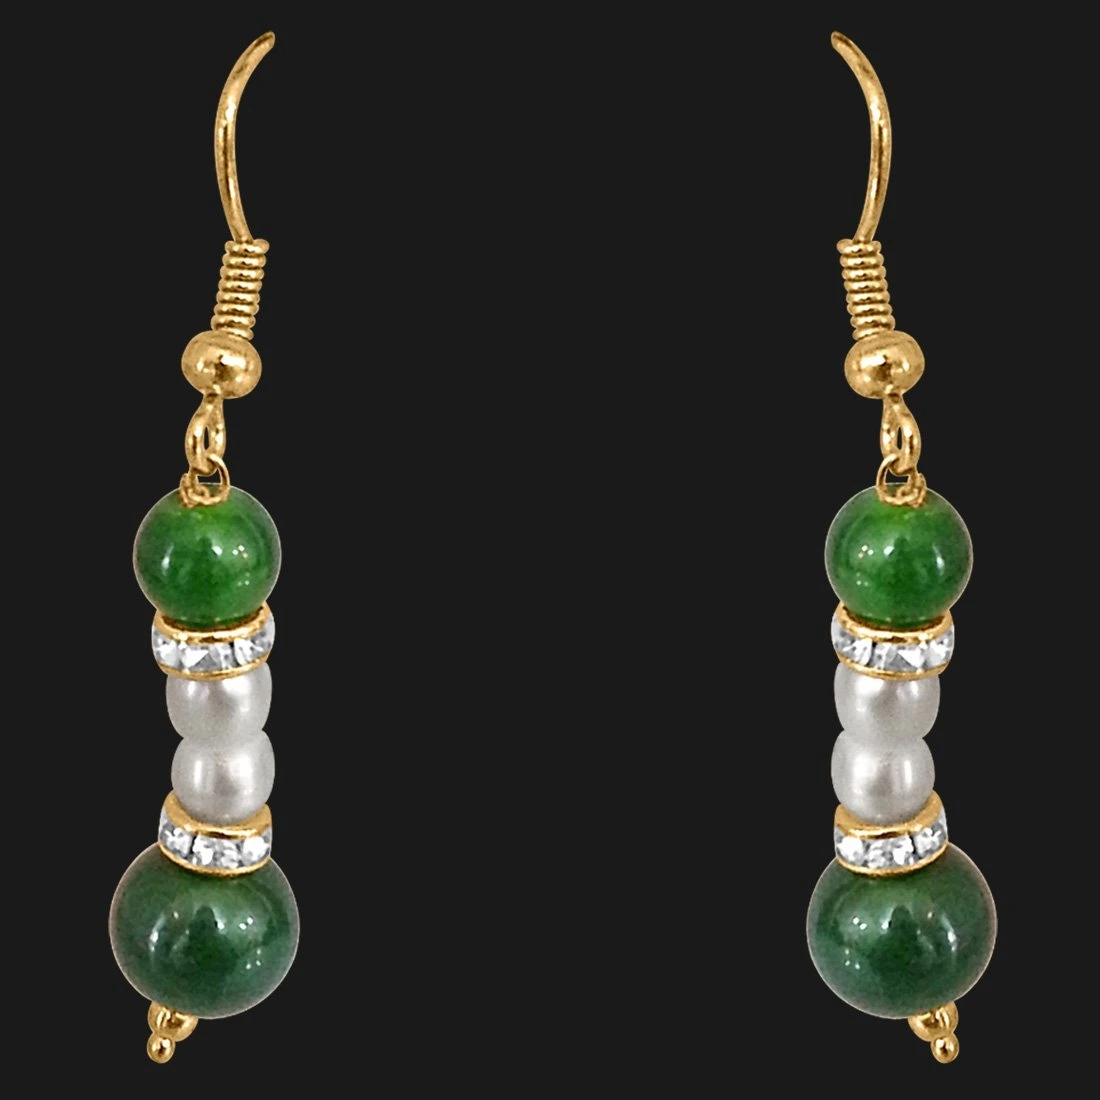 Real Pearl & Green Stone Earrings for Women (SE204)